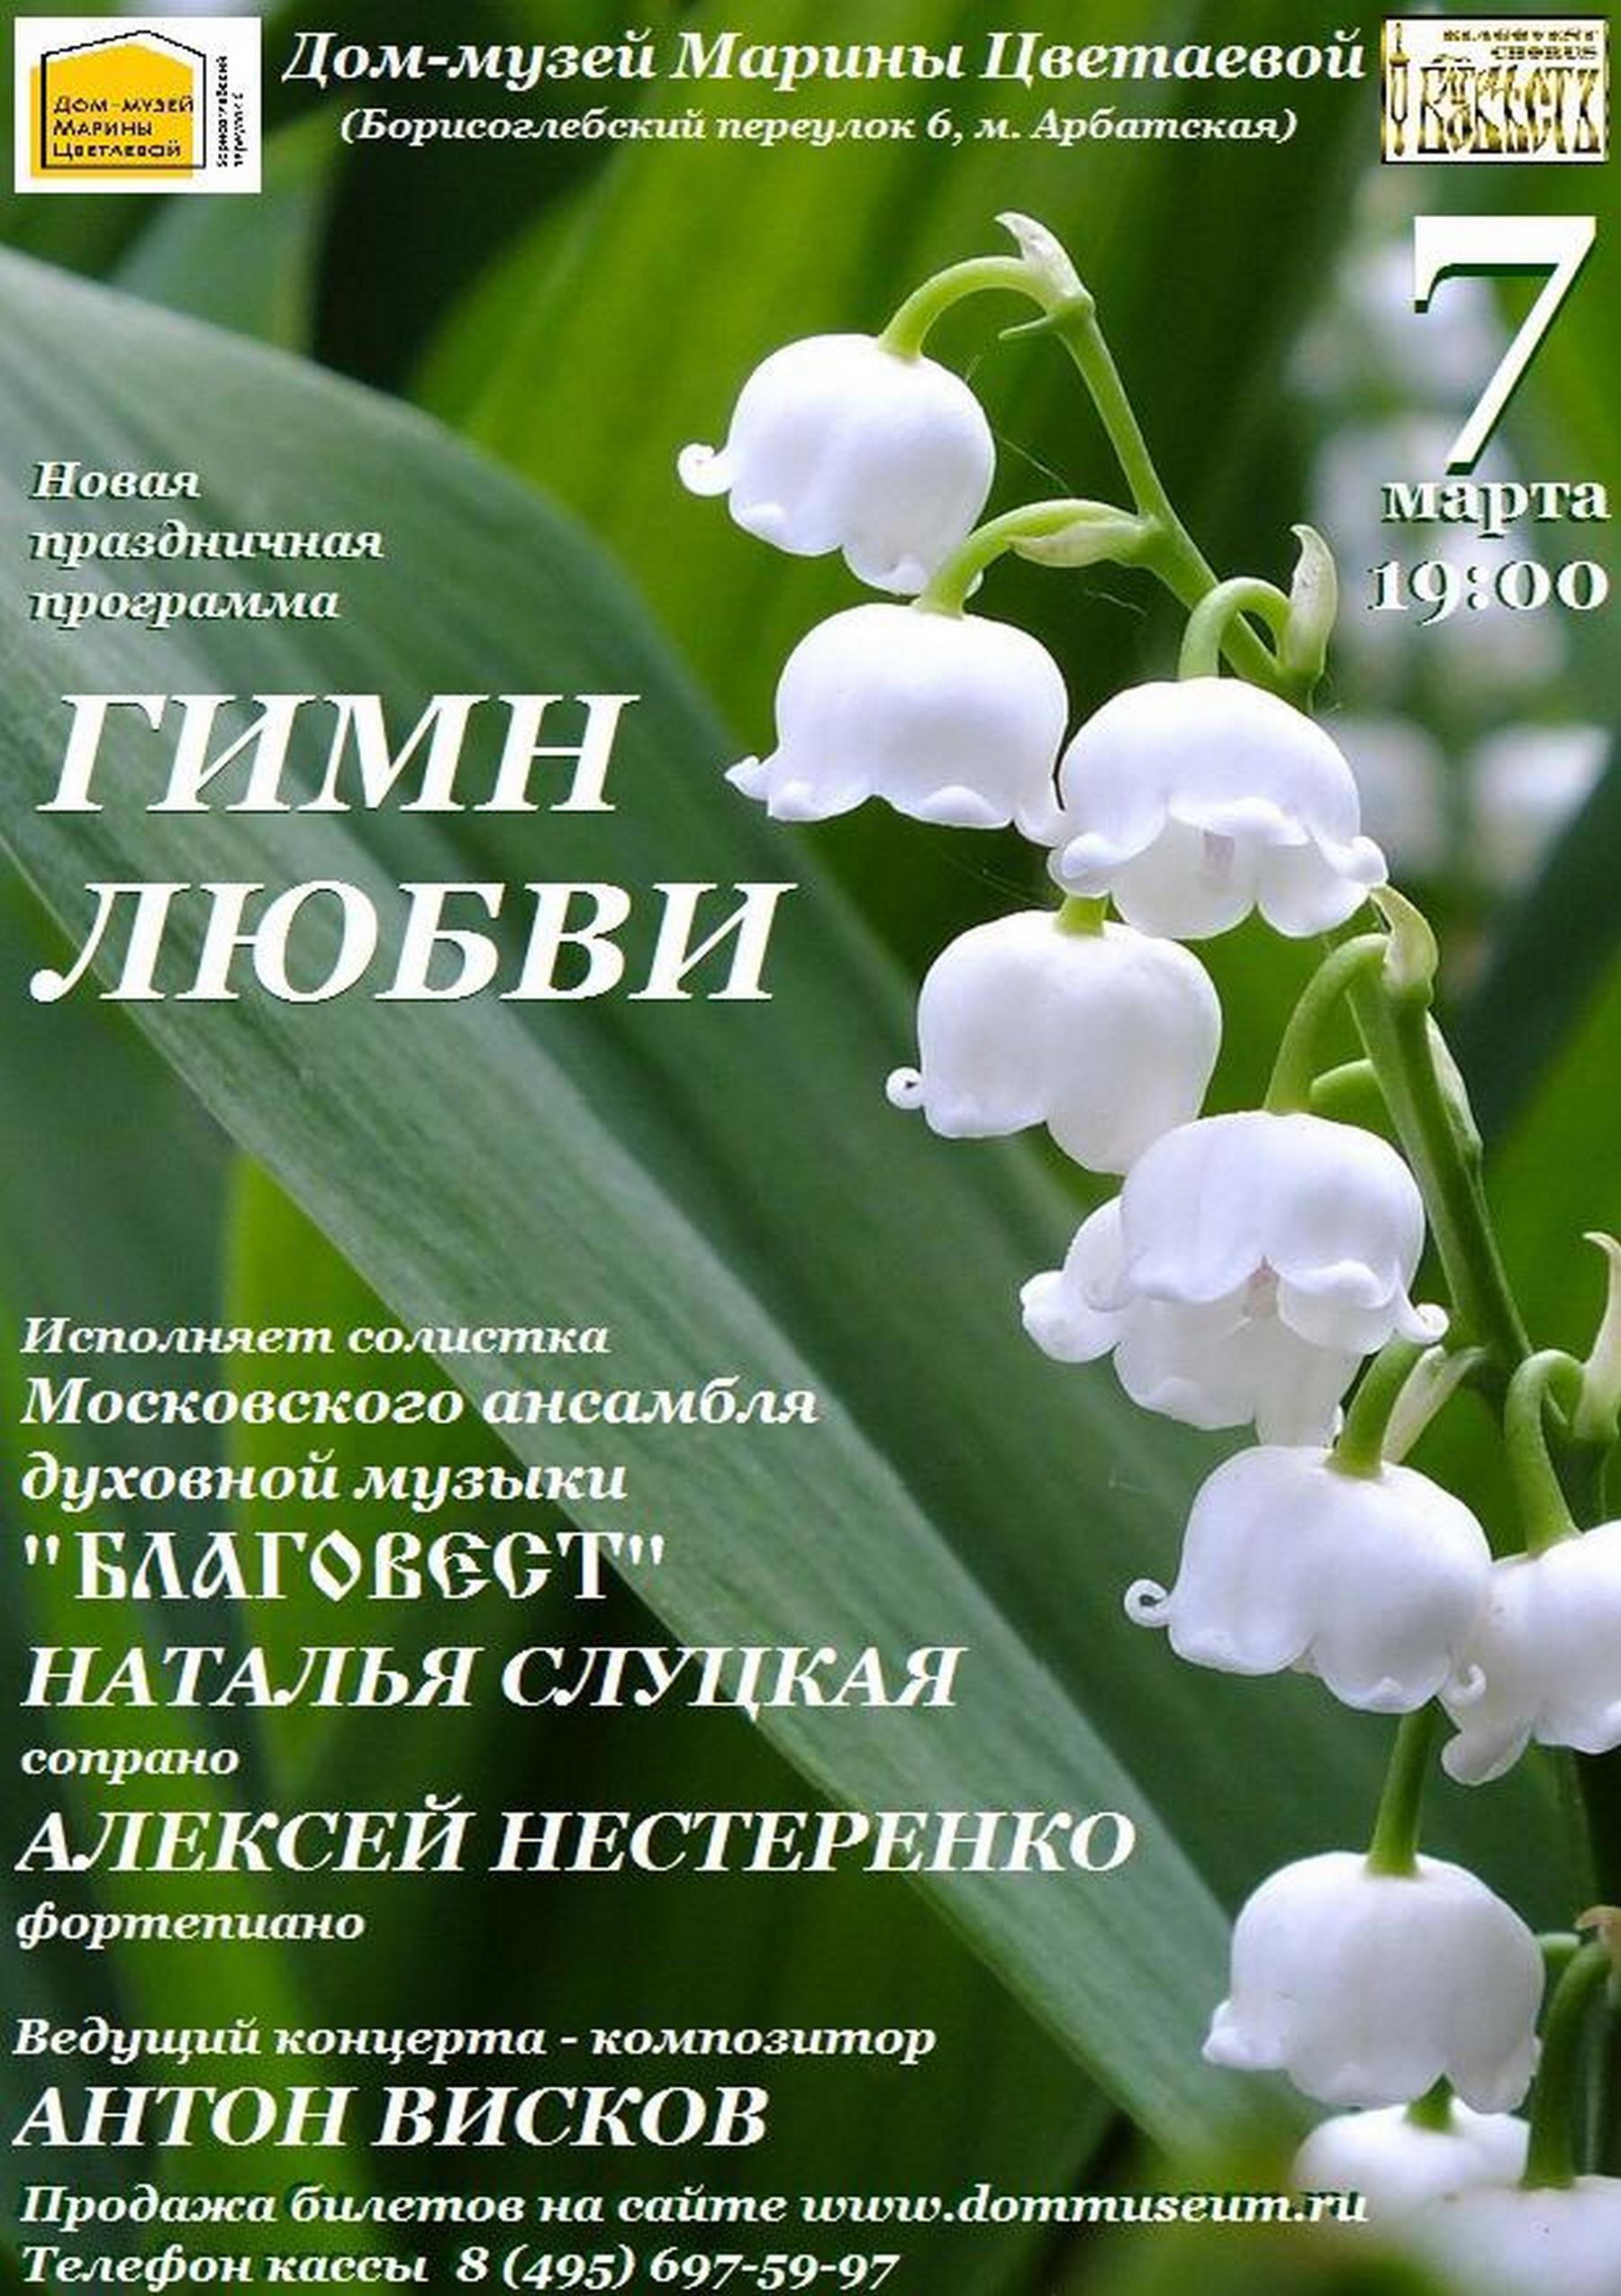 Иллюстрация: «Гимн любви»: праздничный концерт Московского ансамбля духовной музыки «Благовест»